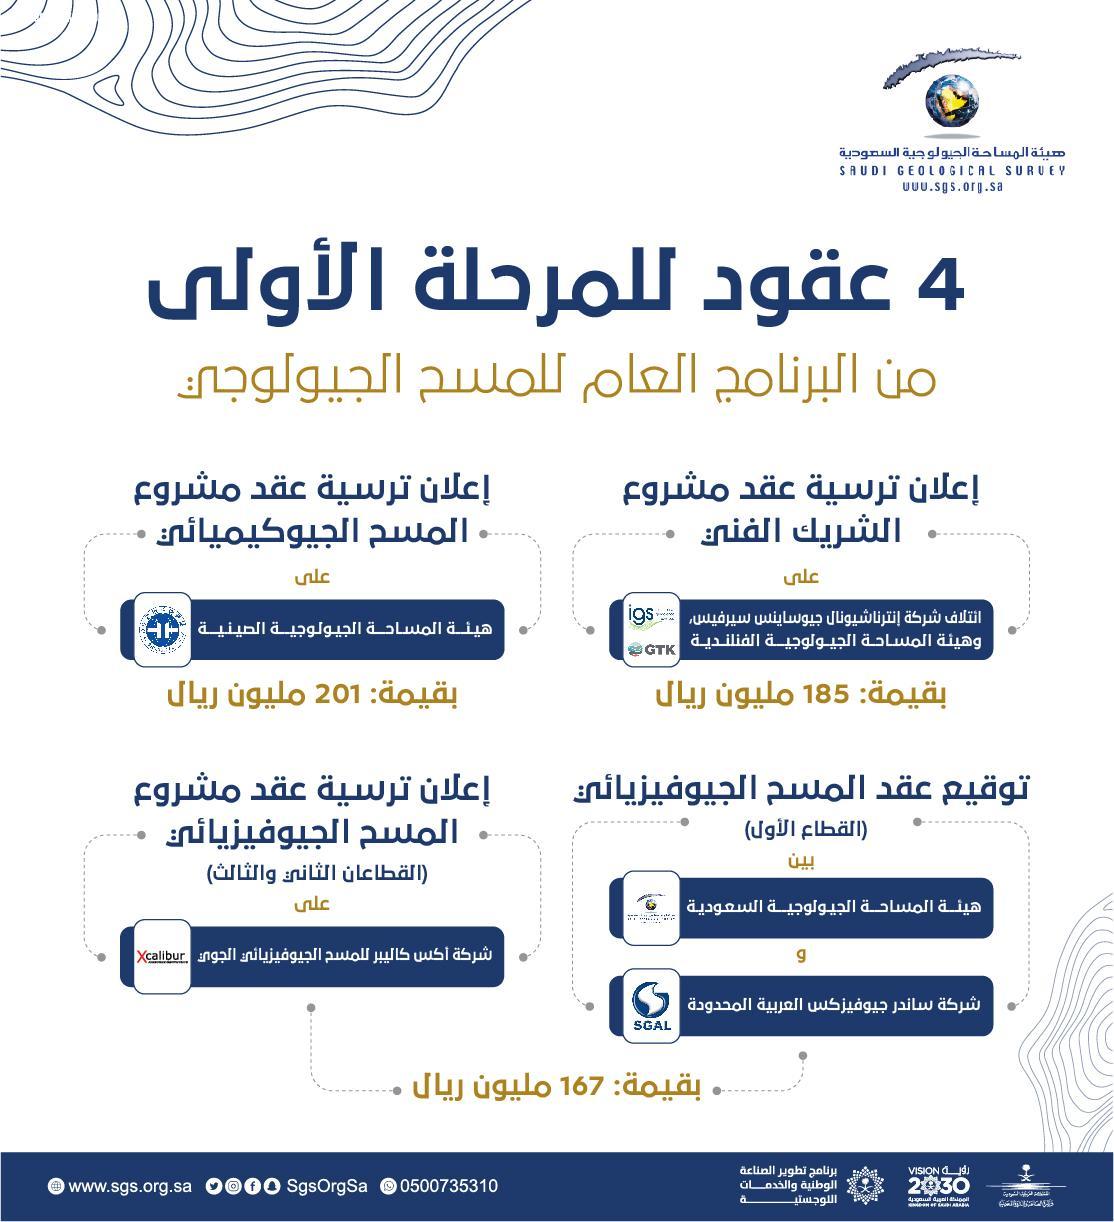 برنامج 5@5 التابع لمنصة ماينز آند موني الإعلامية يُلقي الضوء على قطاع التعدين السعودي، والبرنامج العام للمسح الجيولوجي